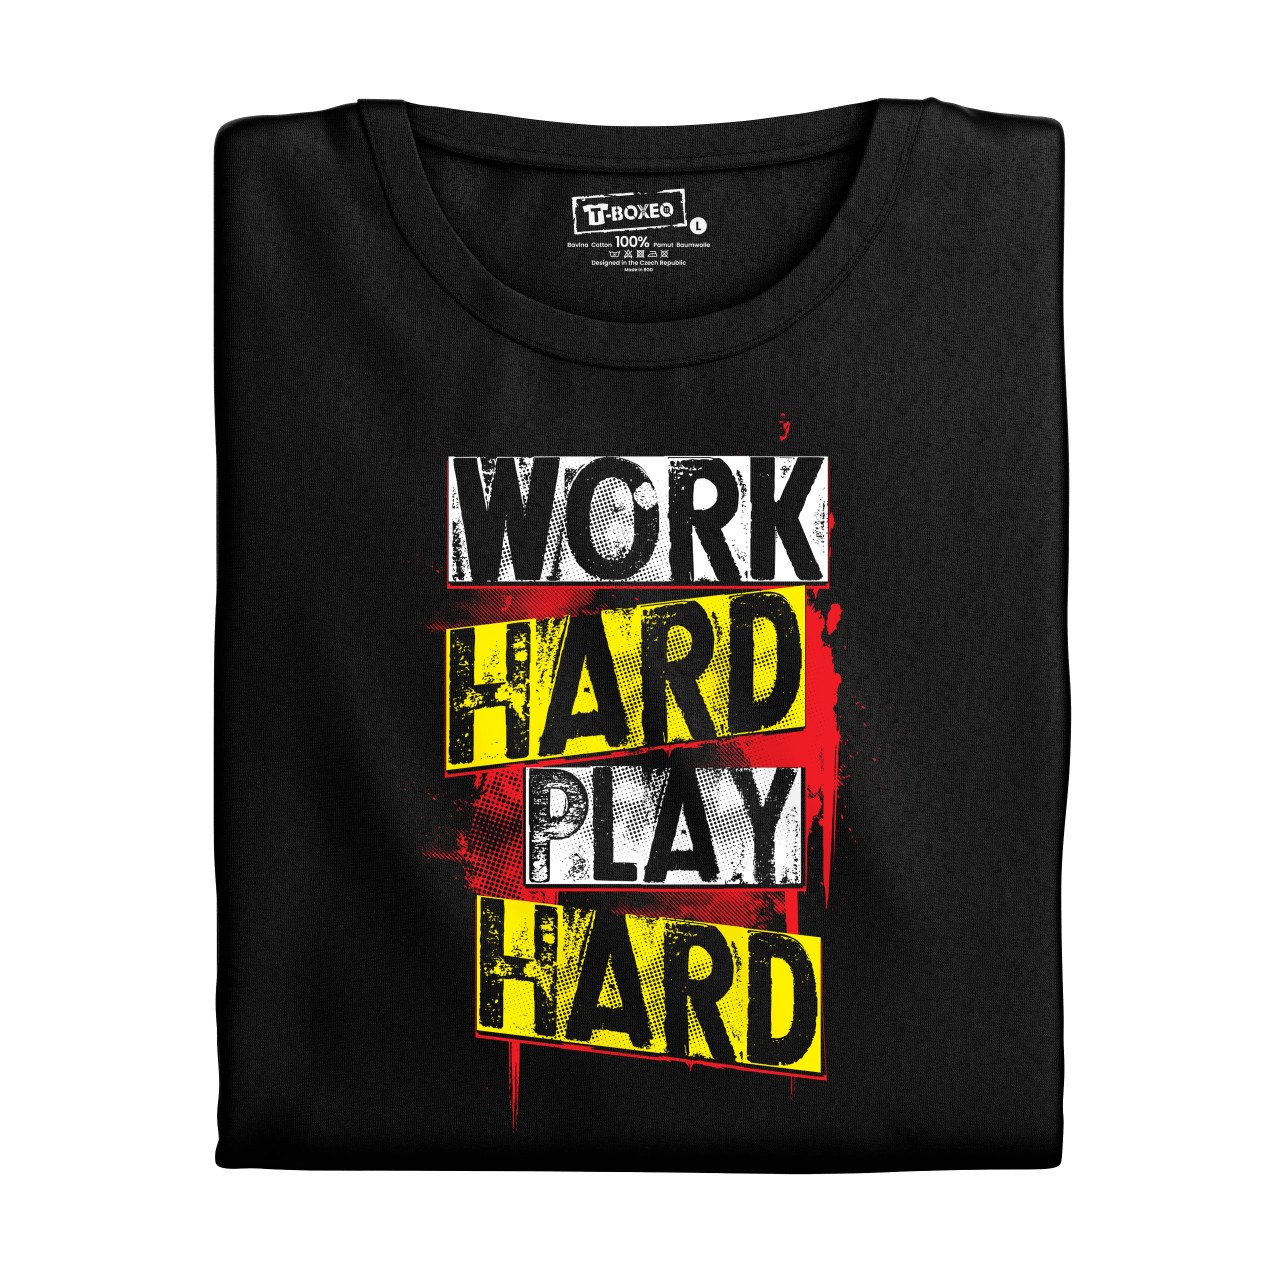 Pánské tričko s potiskem “Work Hard, Play Hard”